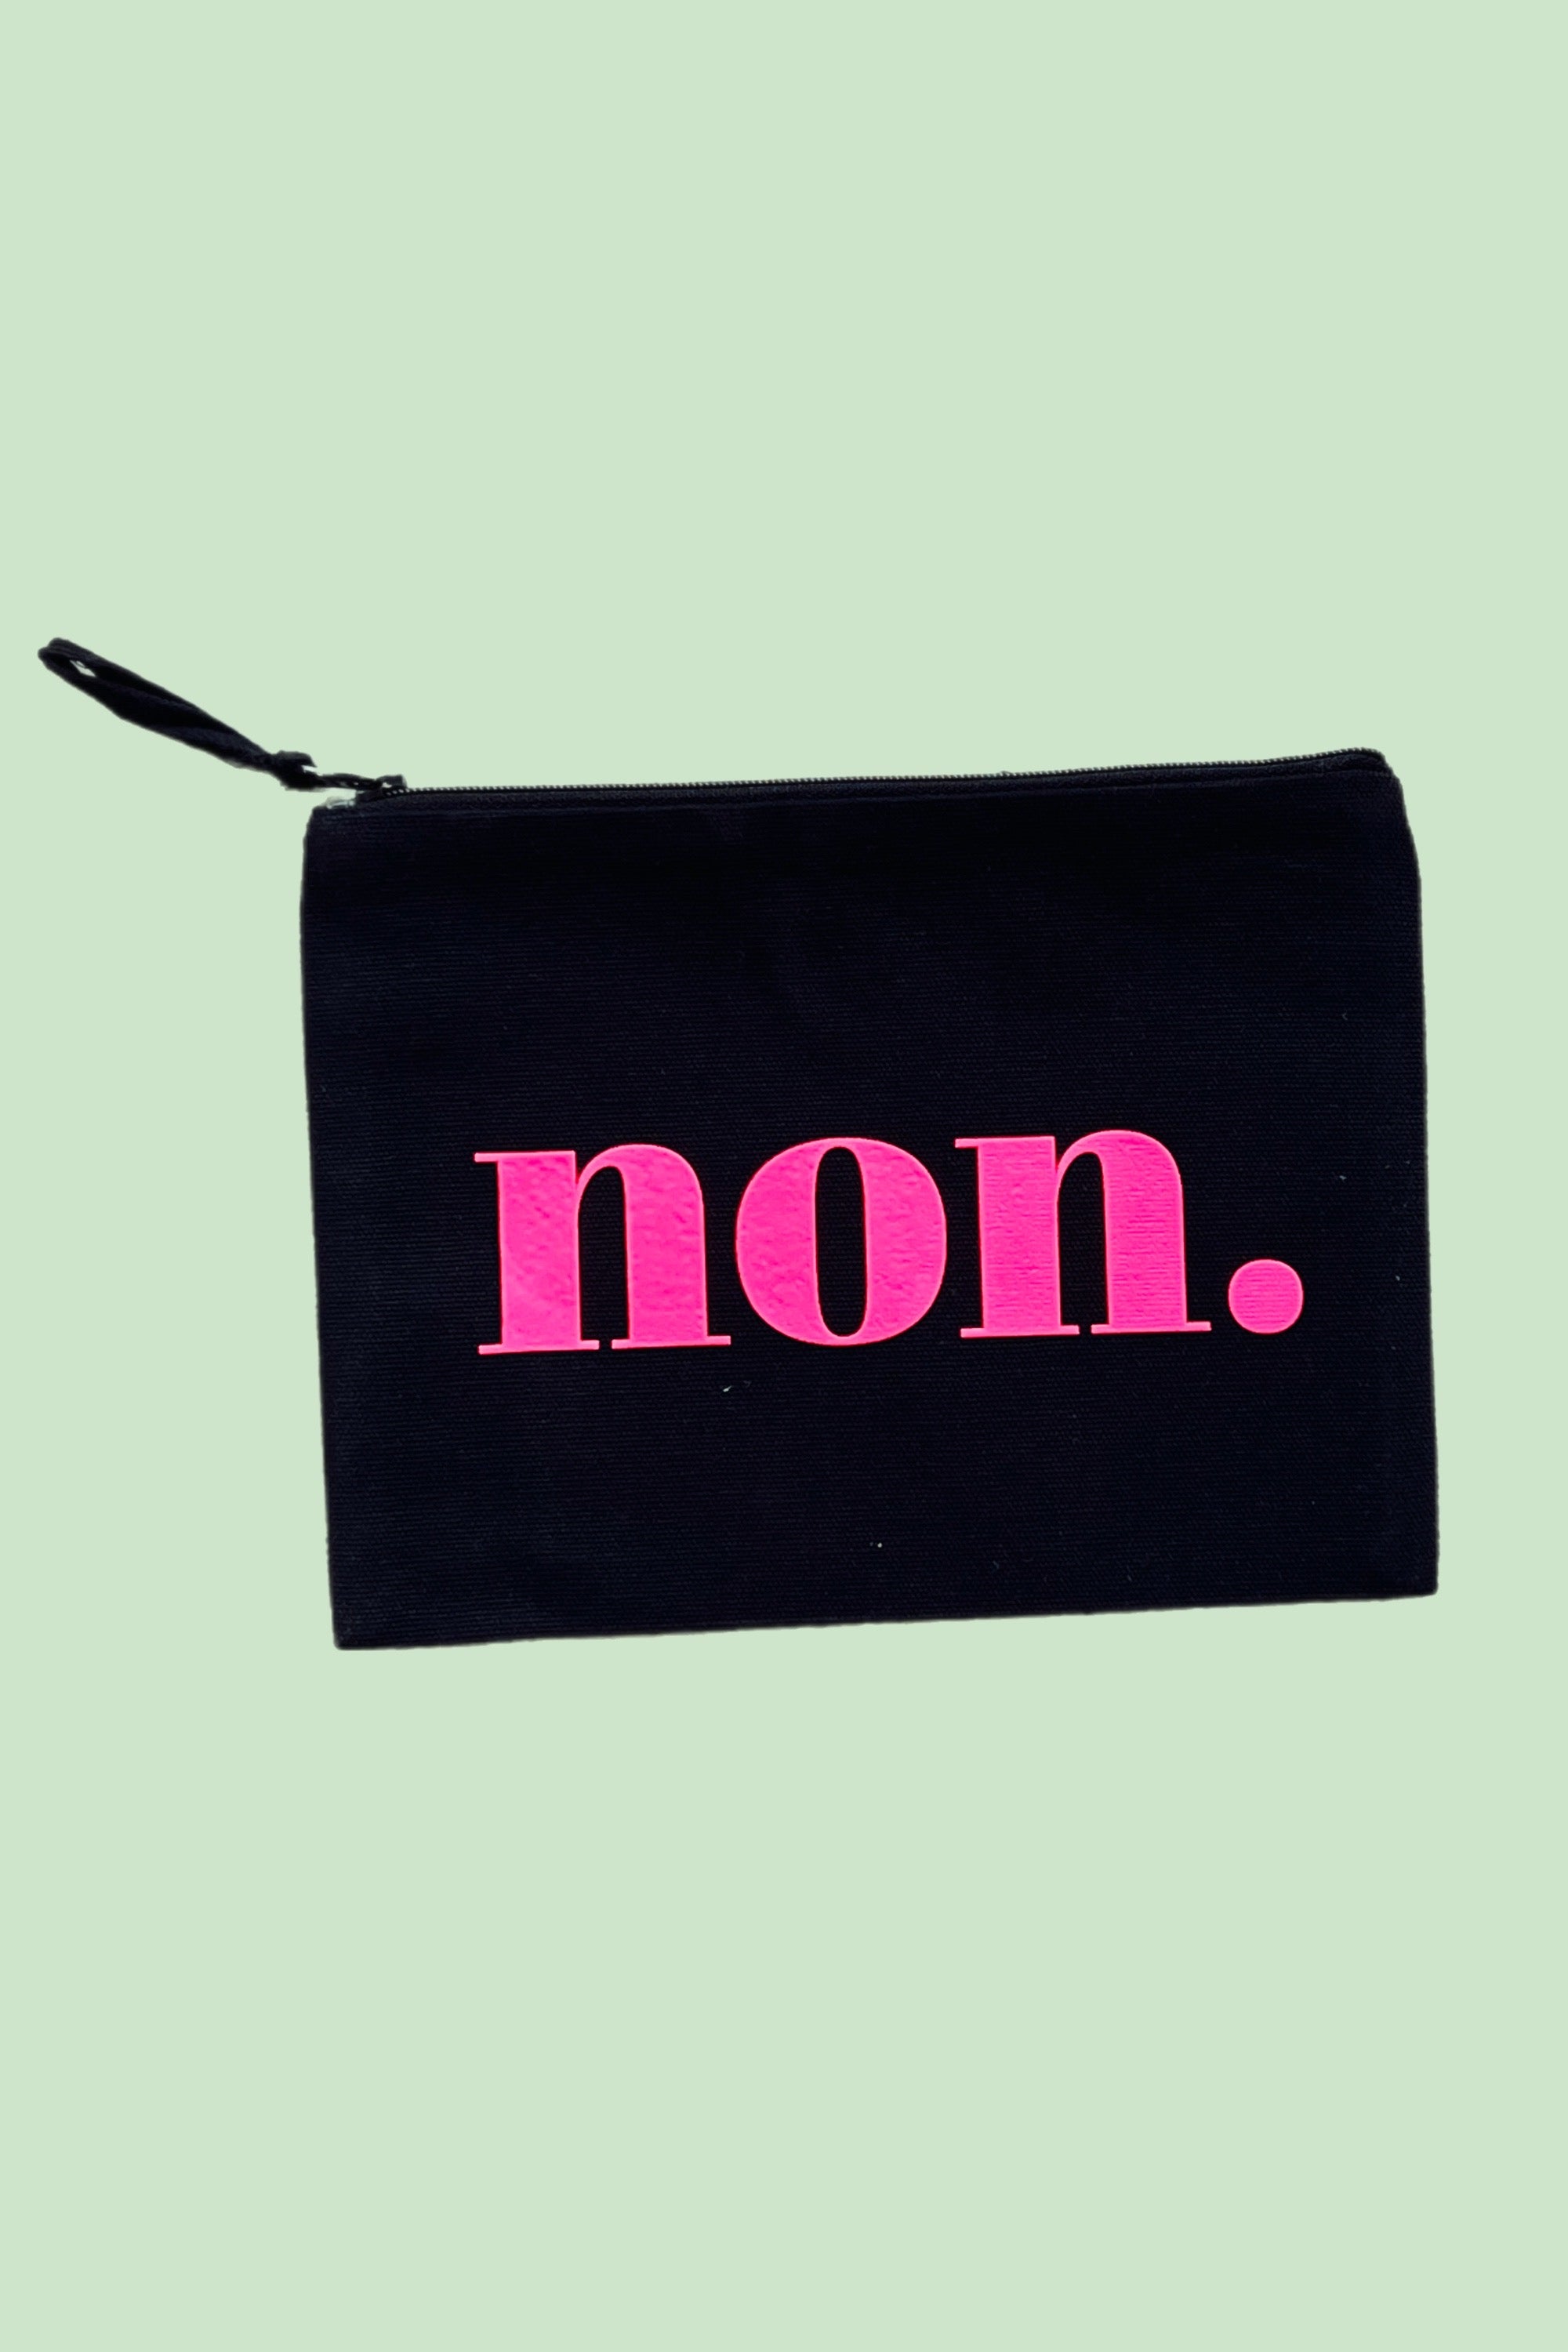 Allez-Hop! Cosmetic Bag - Beige/Neon 